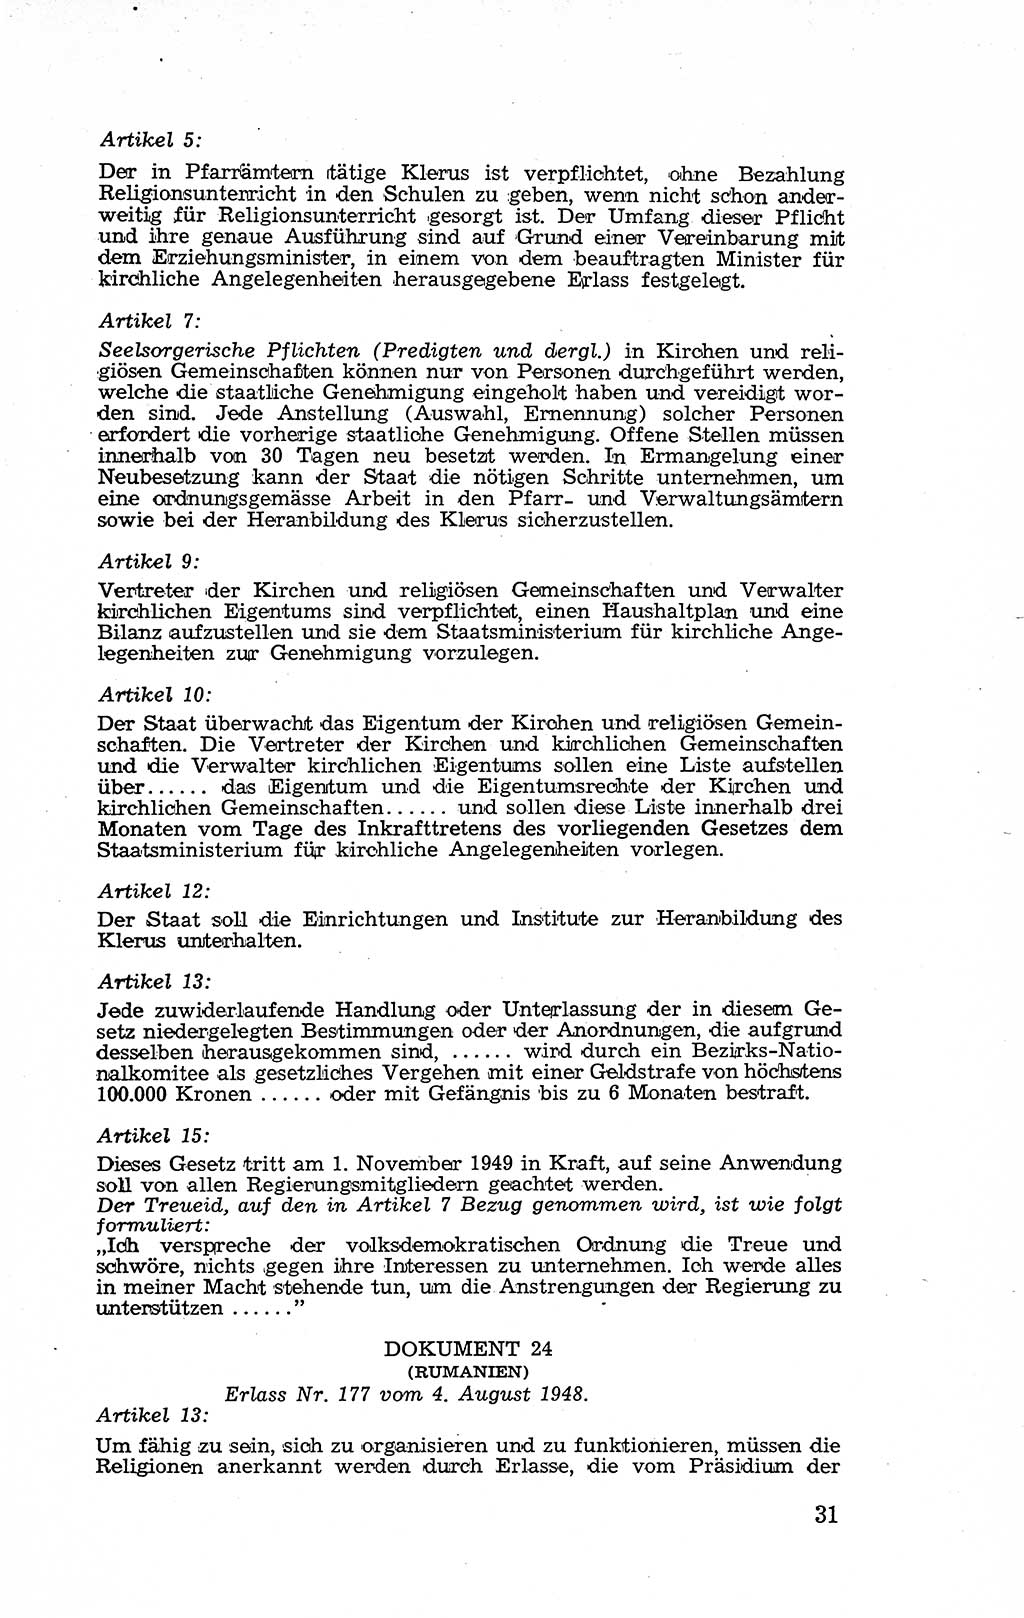 Recht in Fesseln, Dokumente, Internationale Juristen-Kommission [Bundesrepublik Deutschland (BRD)] 1955, Seite 31 (R. Dok. IJK BRD 1955, S. 31)